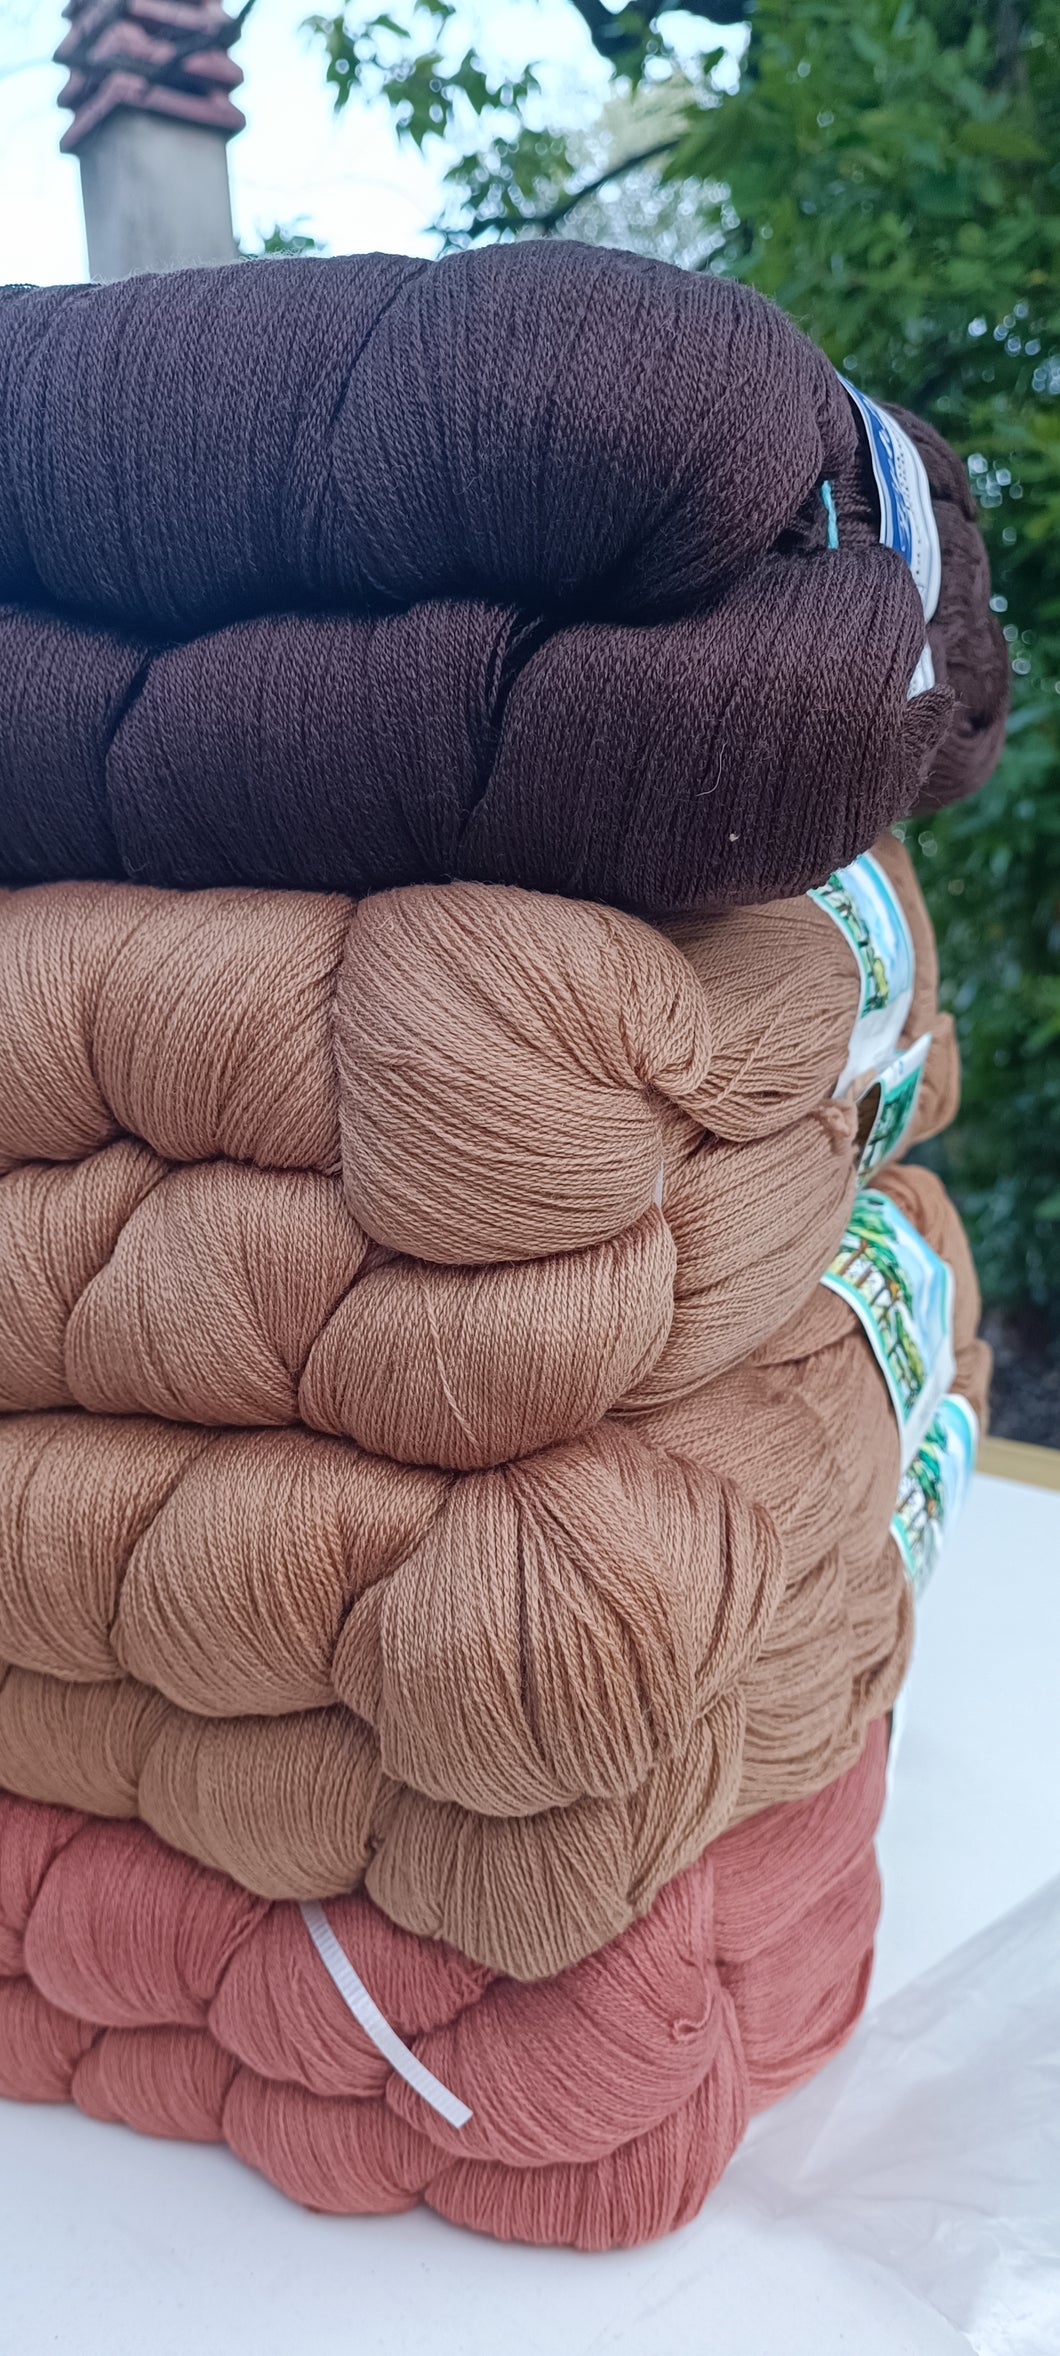 Misto lana bicomponent, Gatto e Cervinia, 2/25, colori in foto. 4 kg.